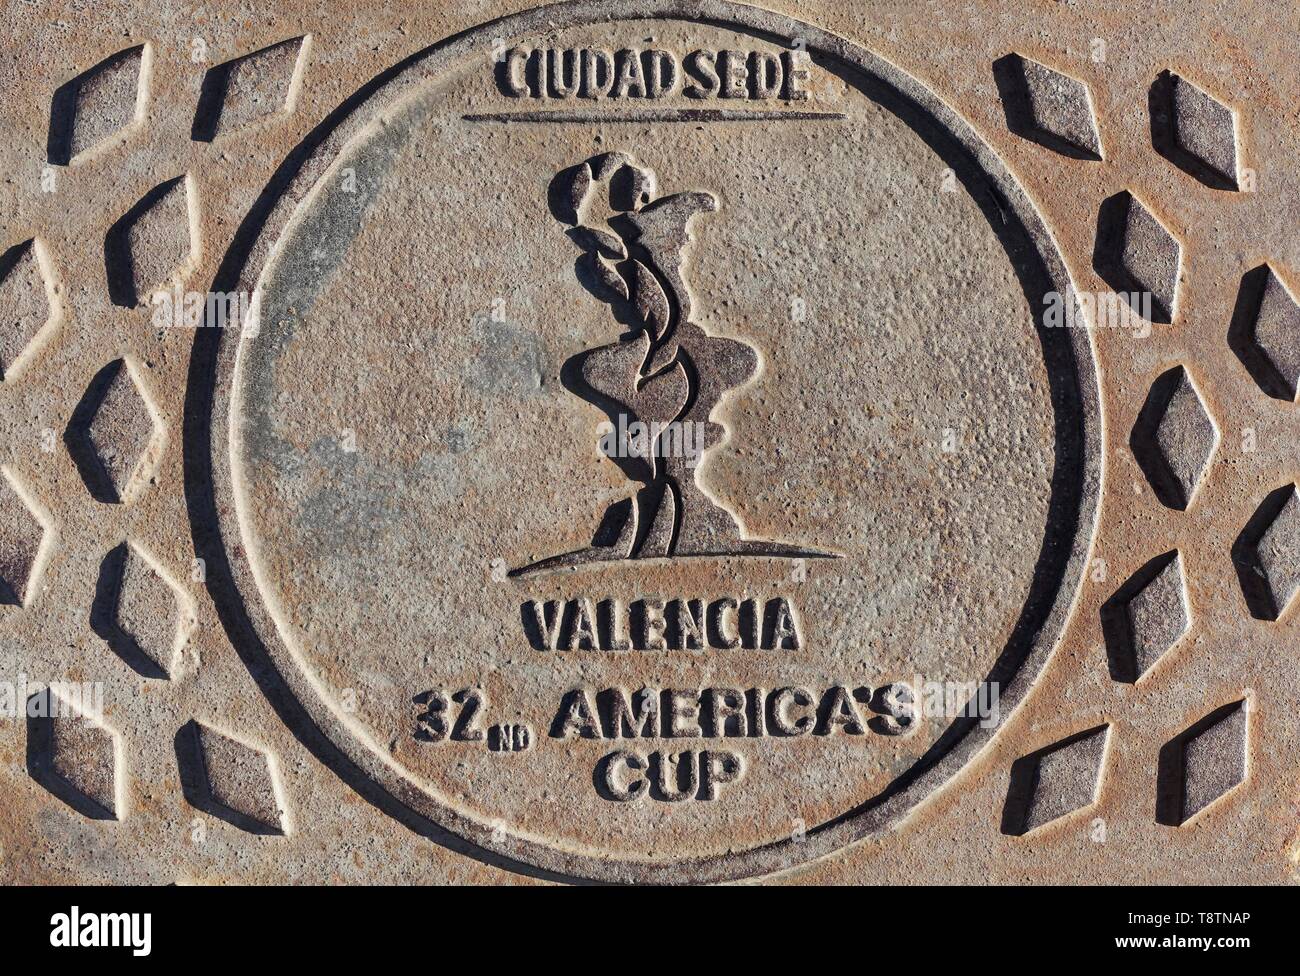 Couvercle de trou d'homme avec inscription, Valencia, lieu de la 32e America's Cup, compétition de voile en 2007, Valencia, Espagne Banque D'Images